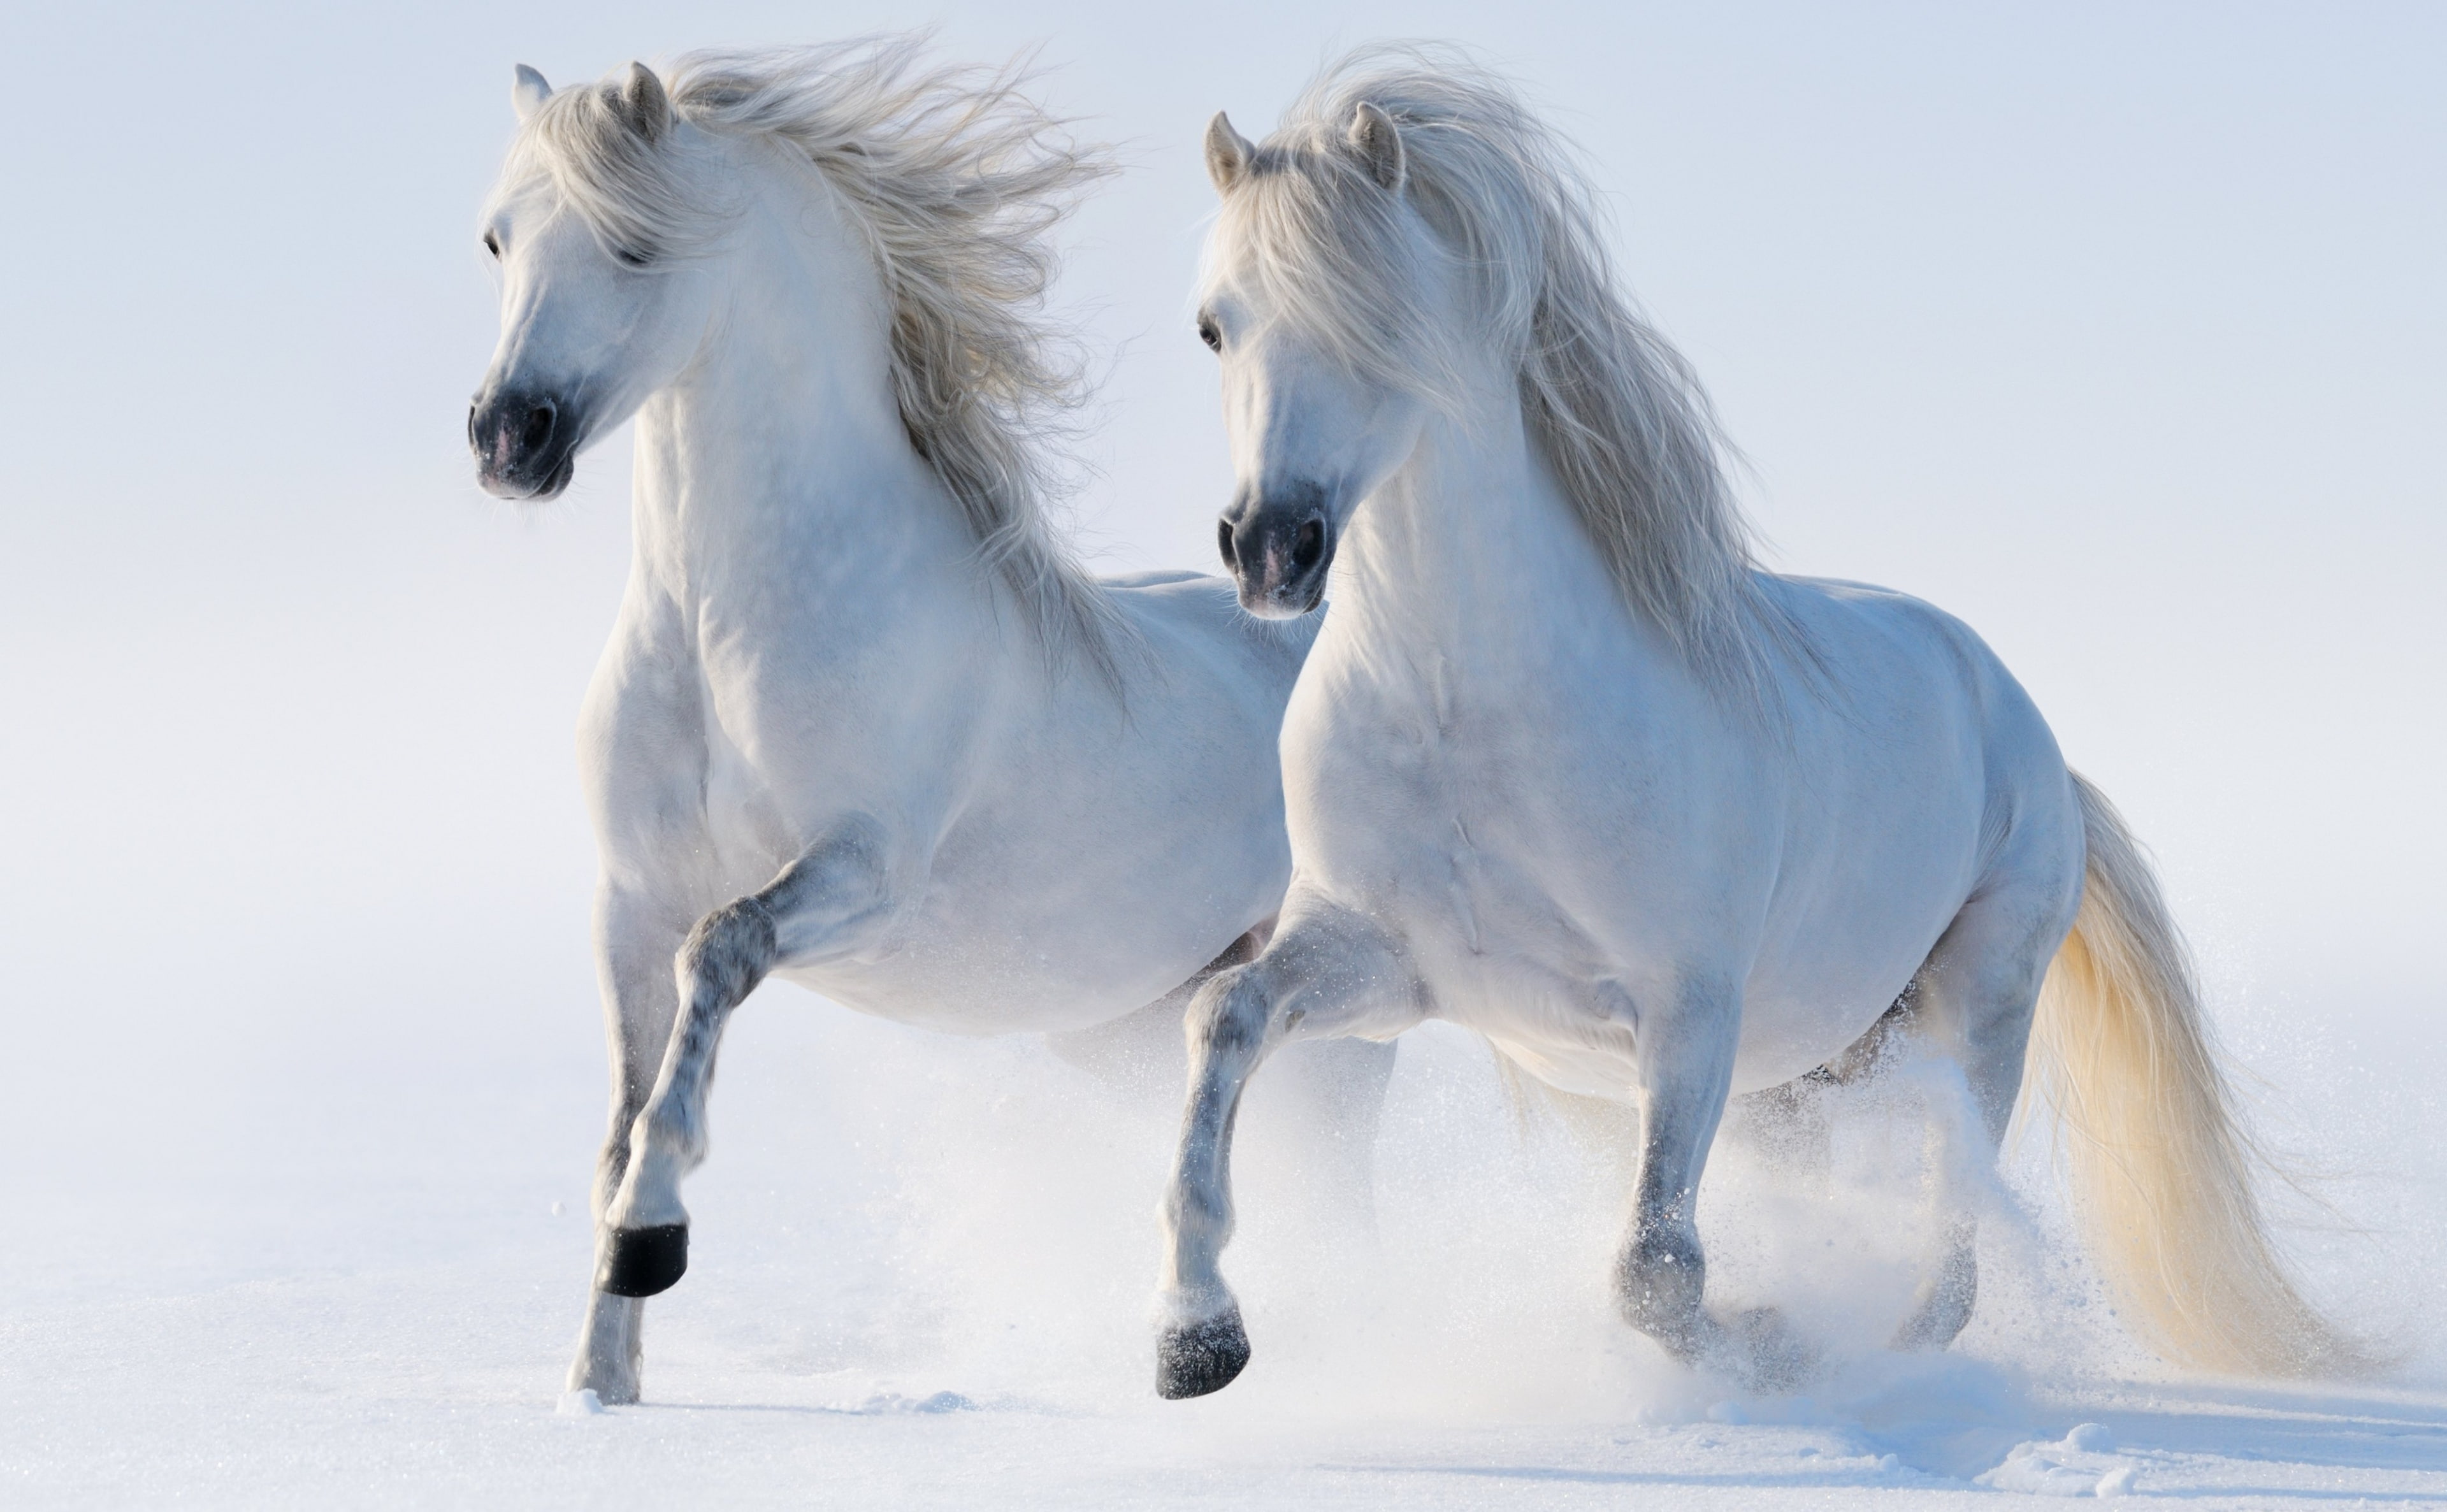 2 Horses, white horses, Animals, Beautiful, Winter, Running, Snow